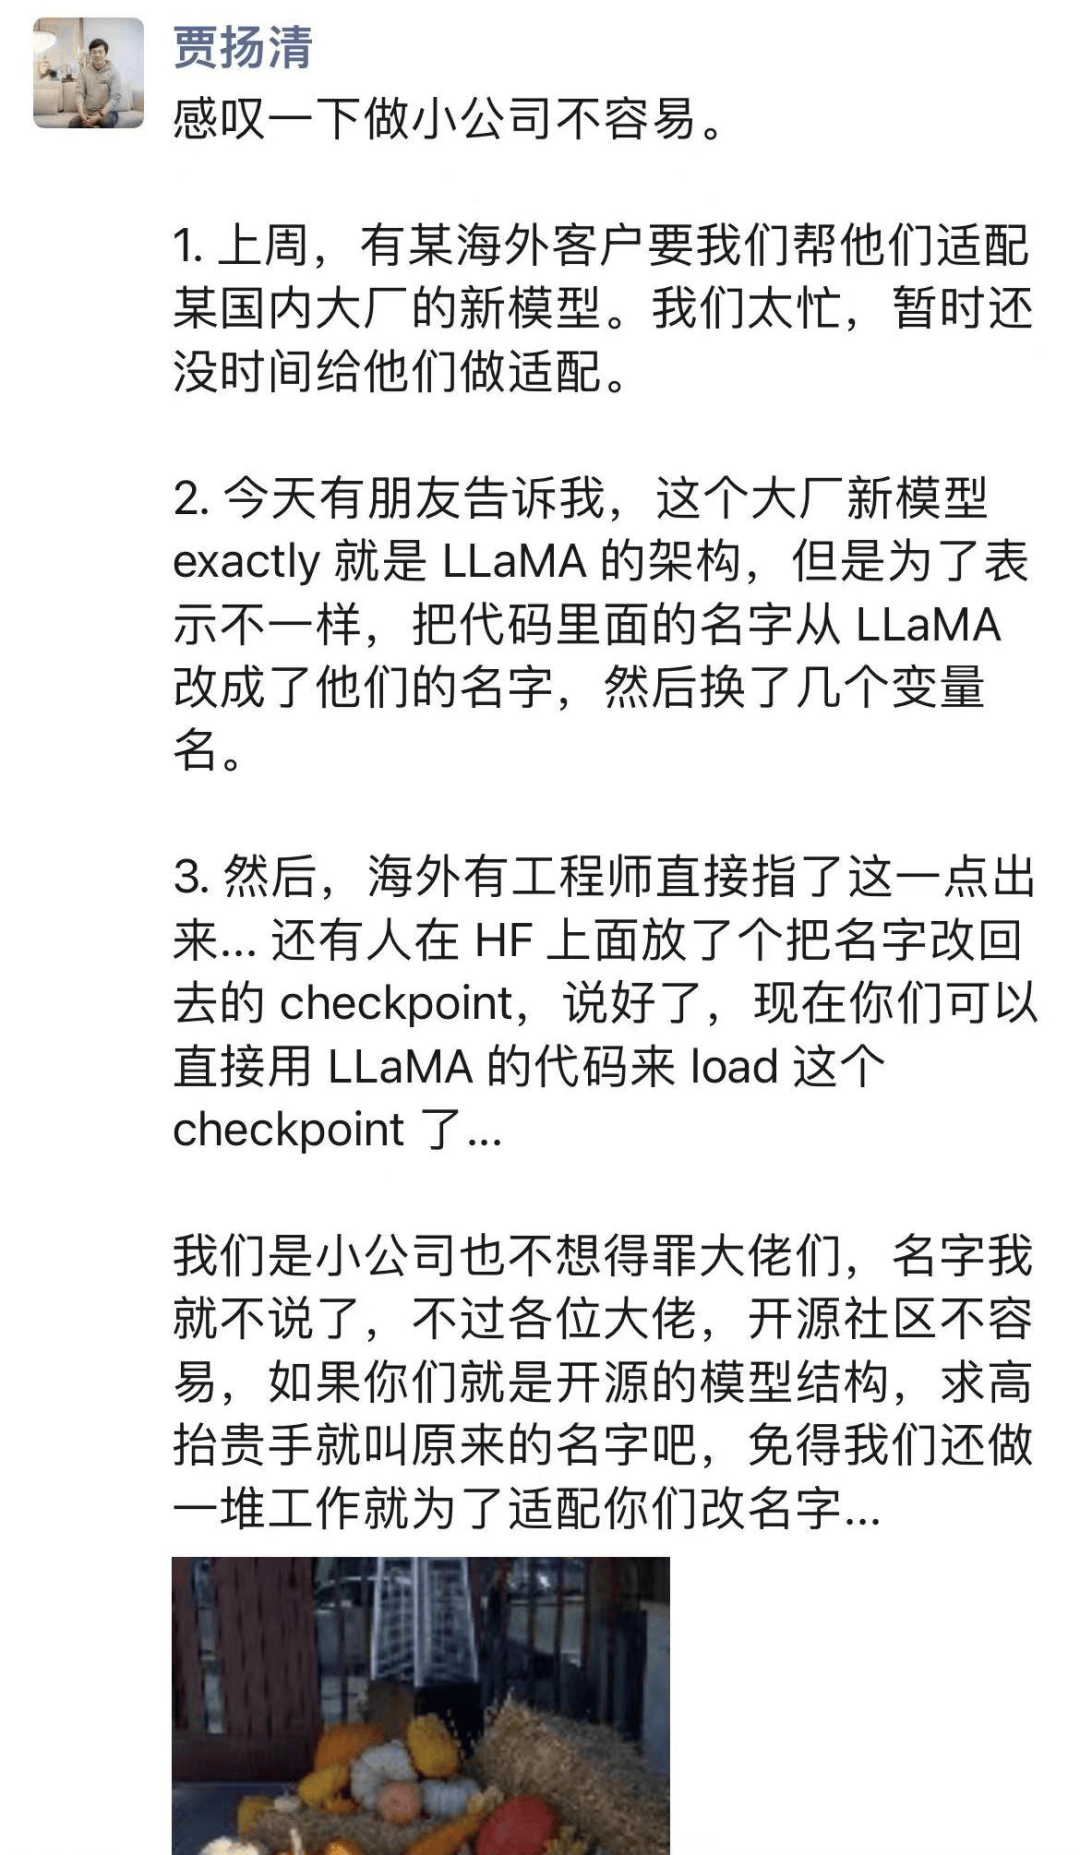 基于LLaMA却改张量名，李开复公司大模型引争议，官方回应来了,基于LLaMA却改张量名，李开复公司大模型引争议，官方回应来了